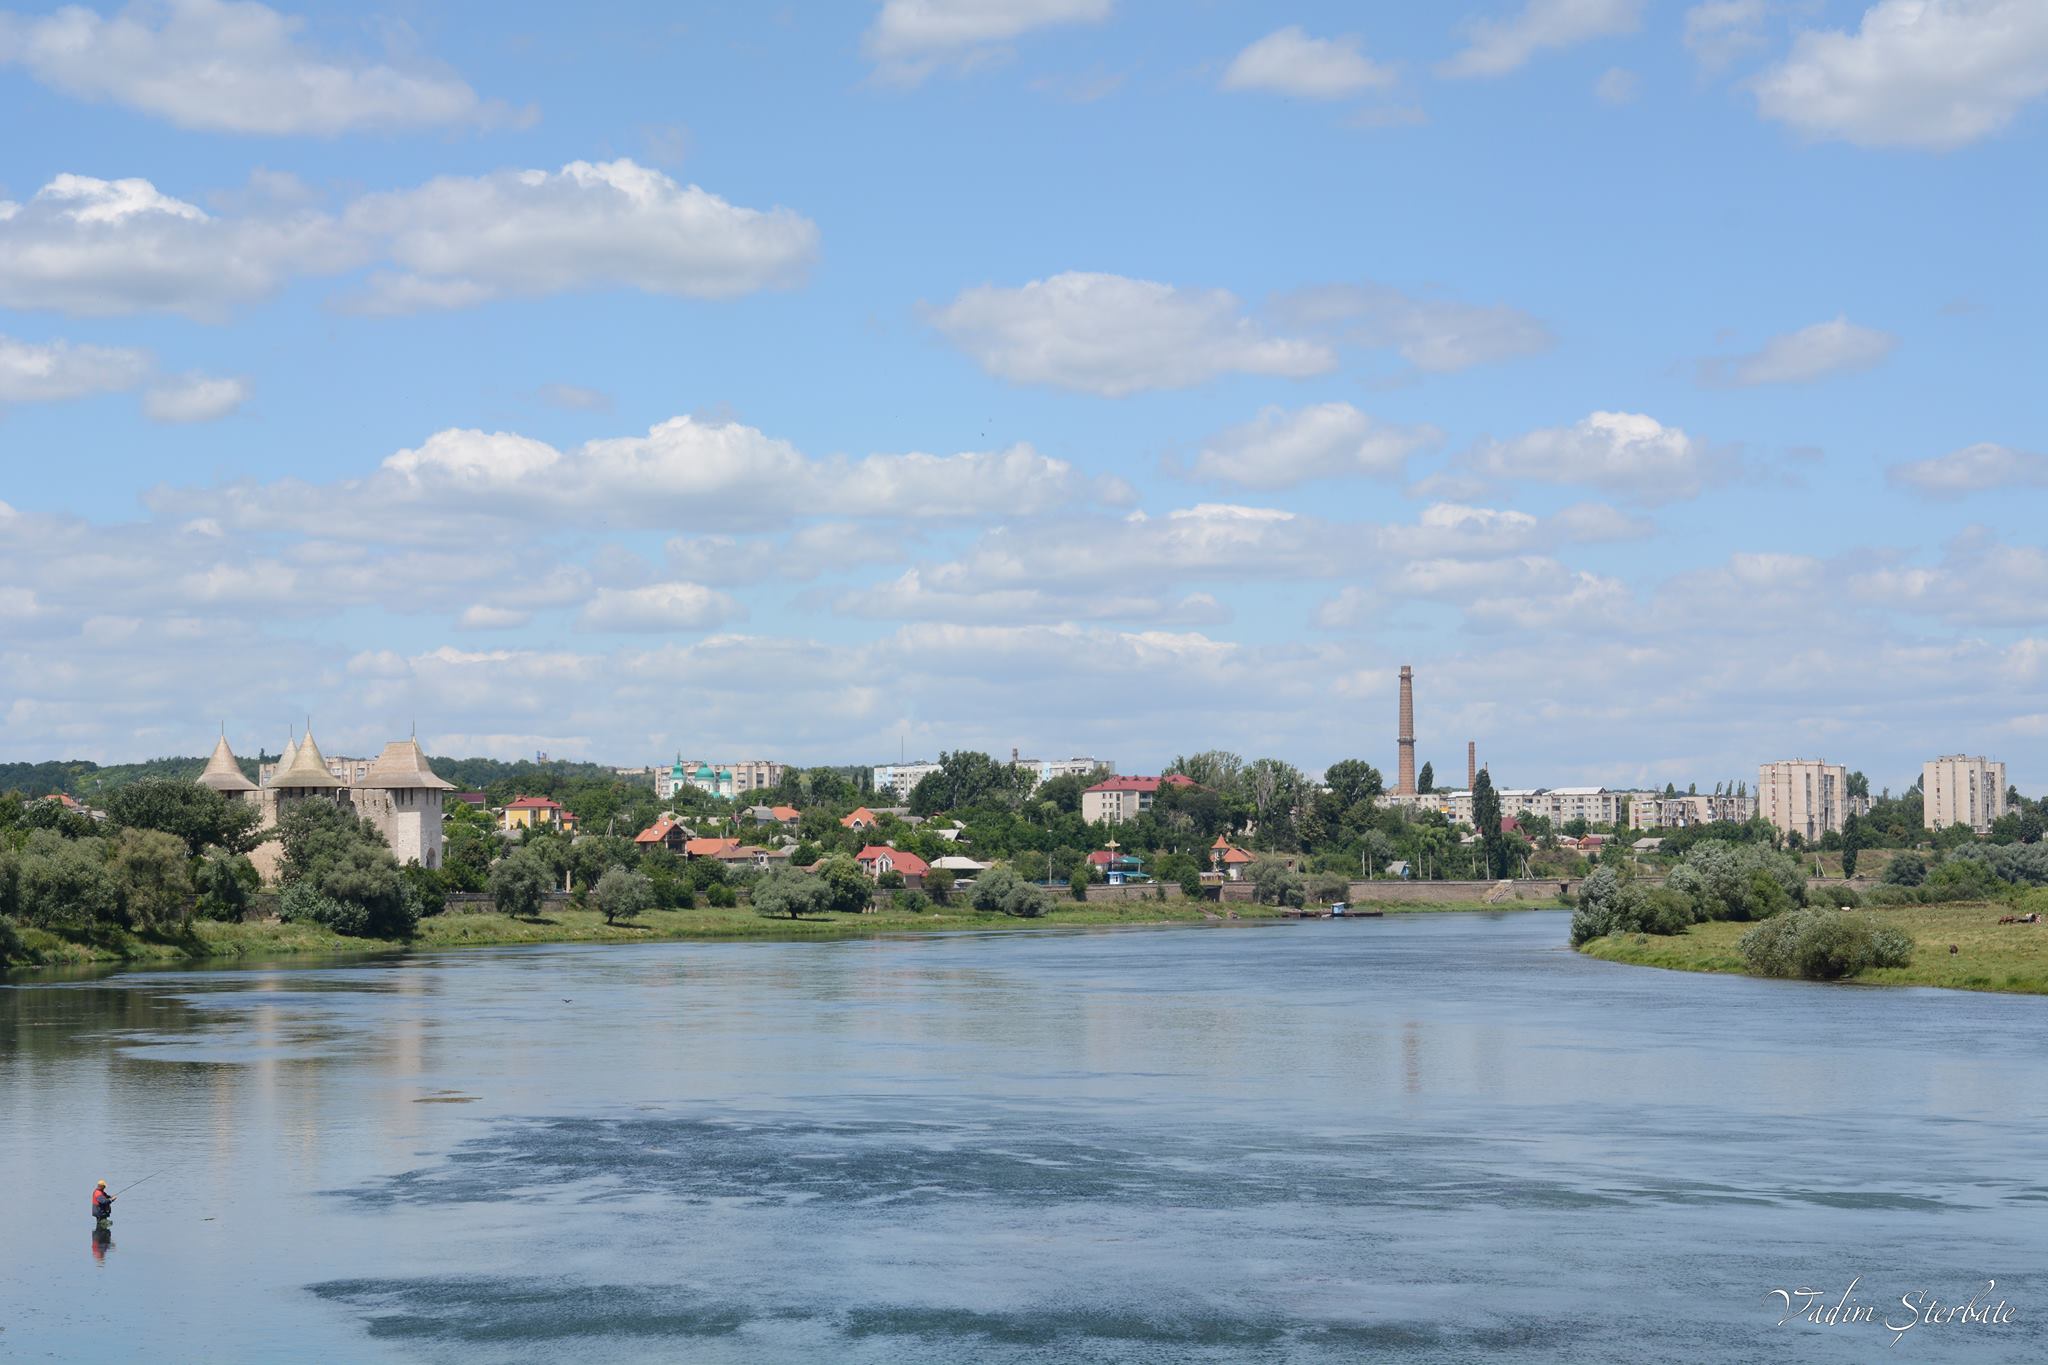  Problema apelor uzate din Soroca, pe agenda Ministerului Mediului. Stația de epurare urmează să fie construită până în 2025